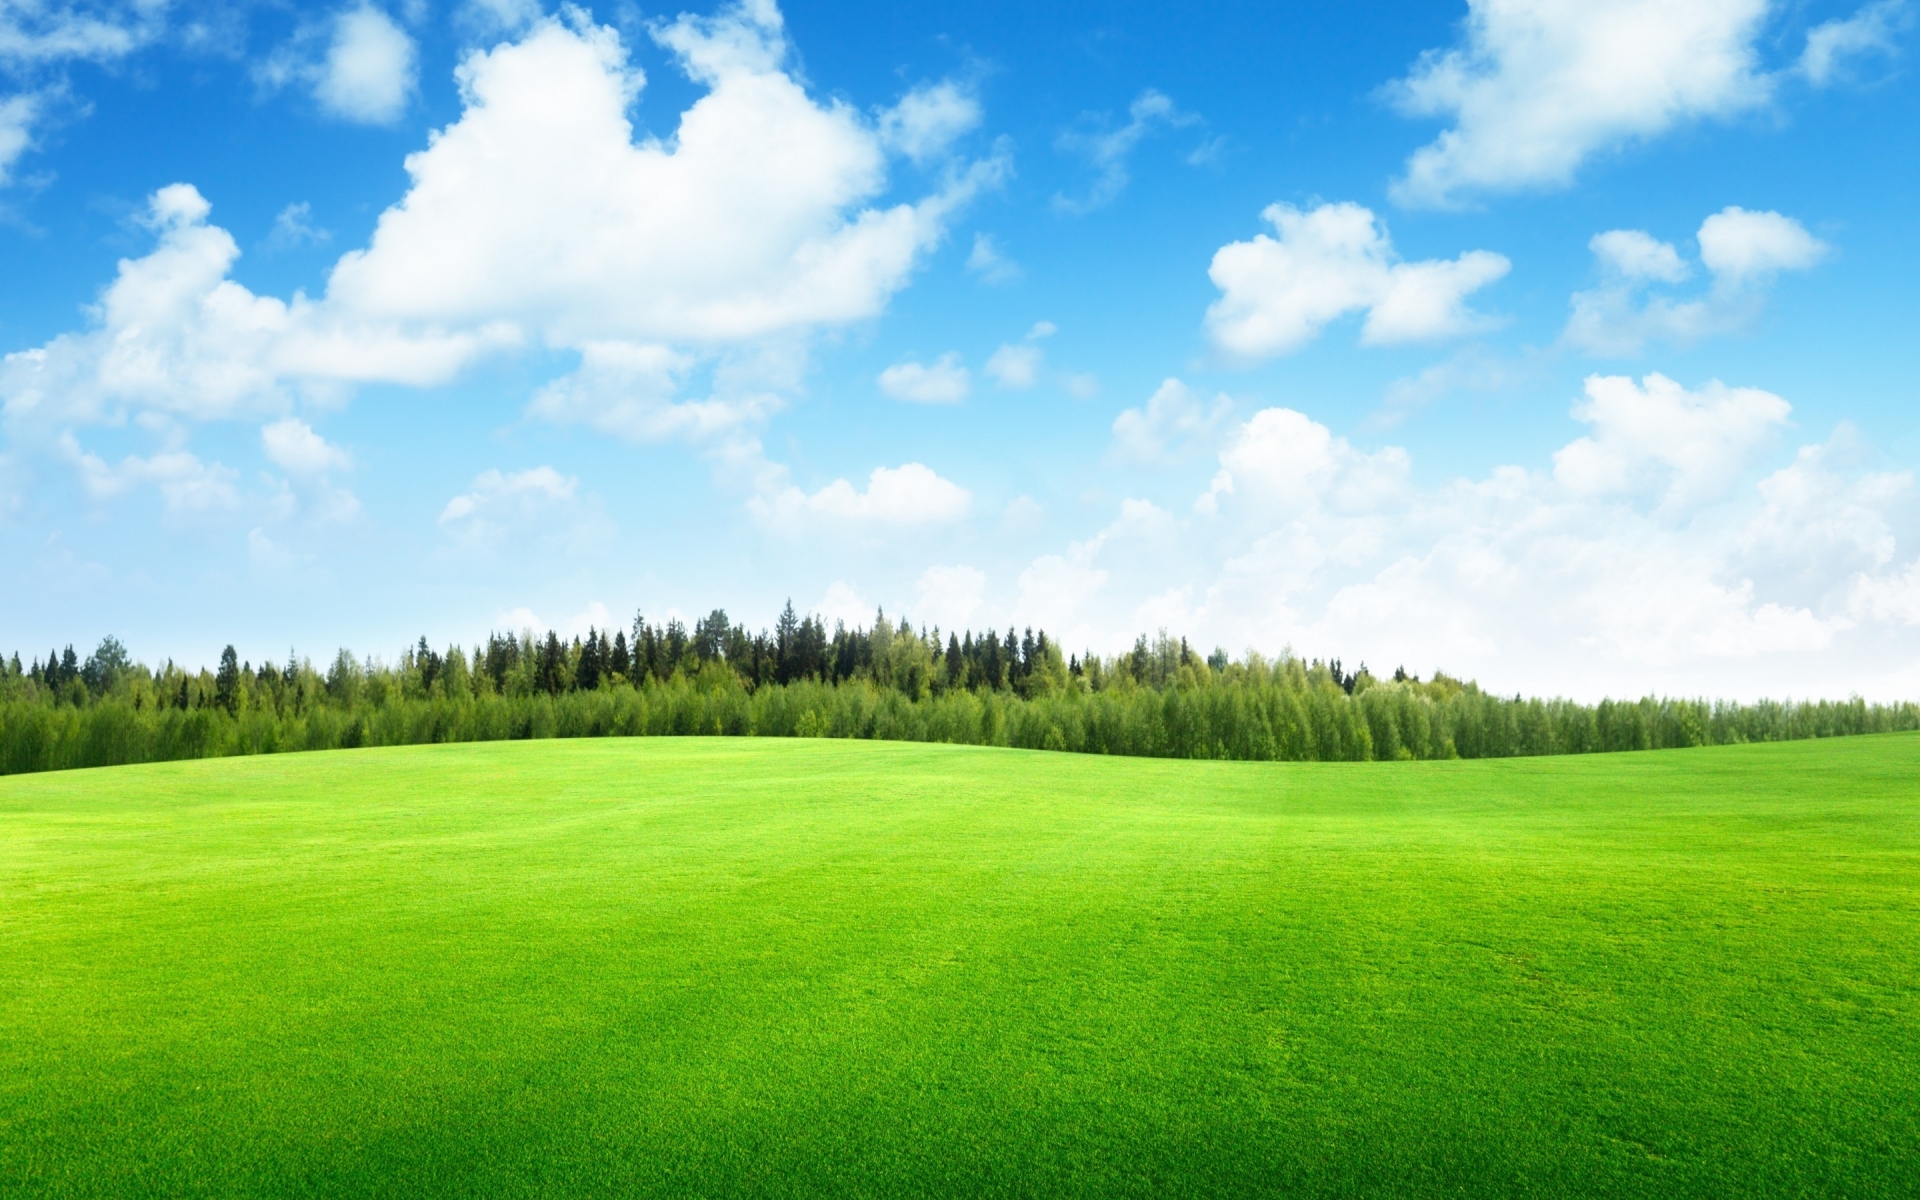 Beaufitul Green Grass Field for 1920 x 1200 widescreen resolution